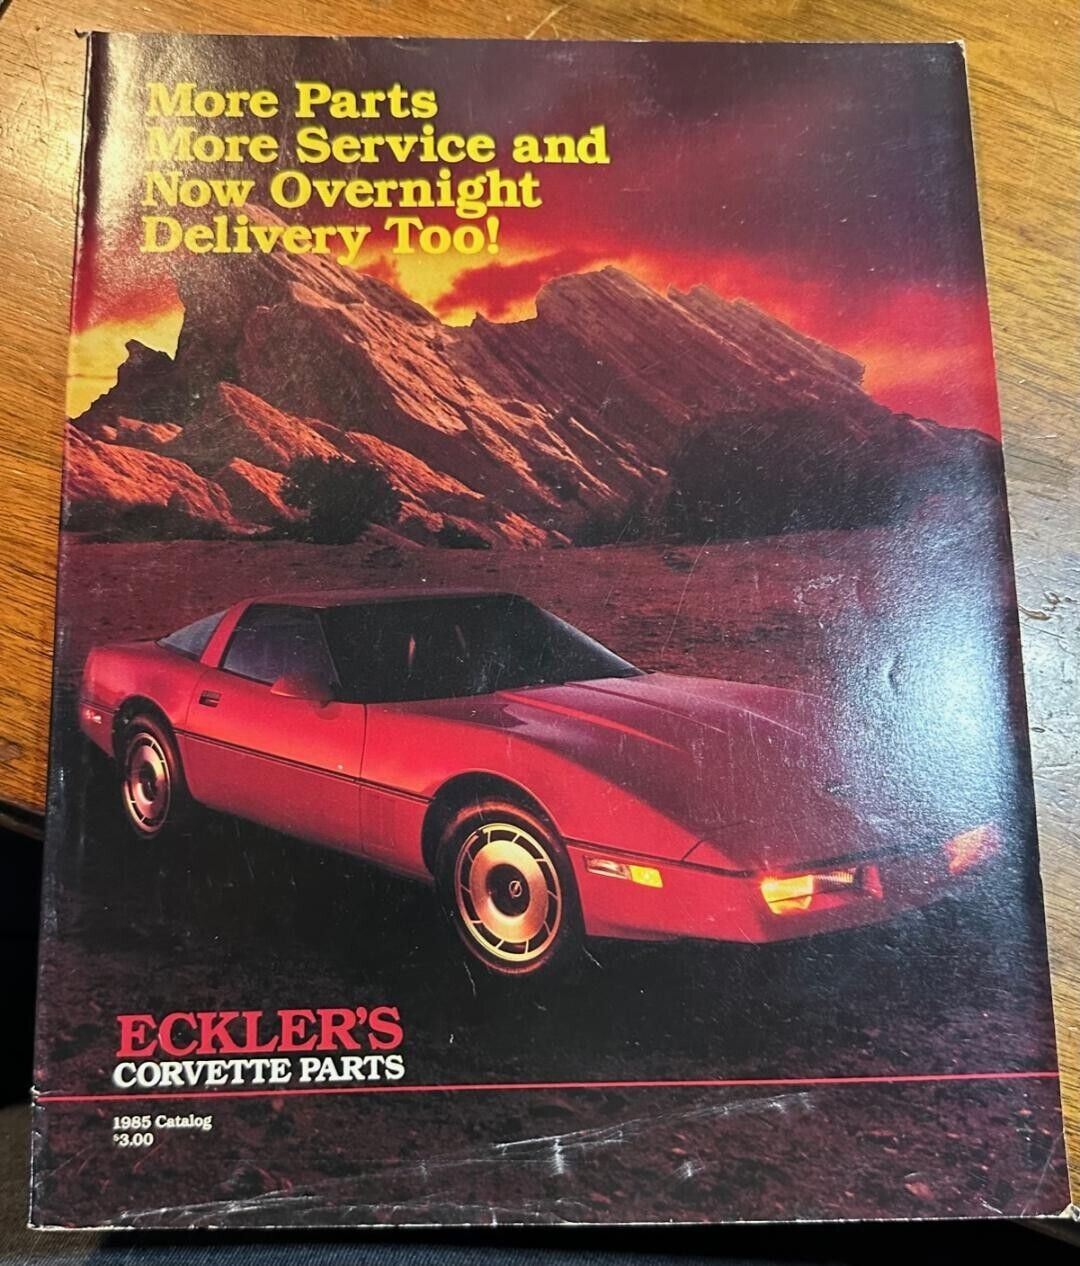 1985 Chevrolet Corvette Accessories Eckler's Corvettes Parts Sales Catalog